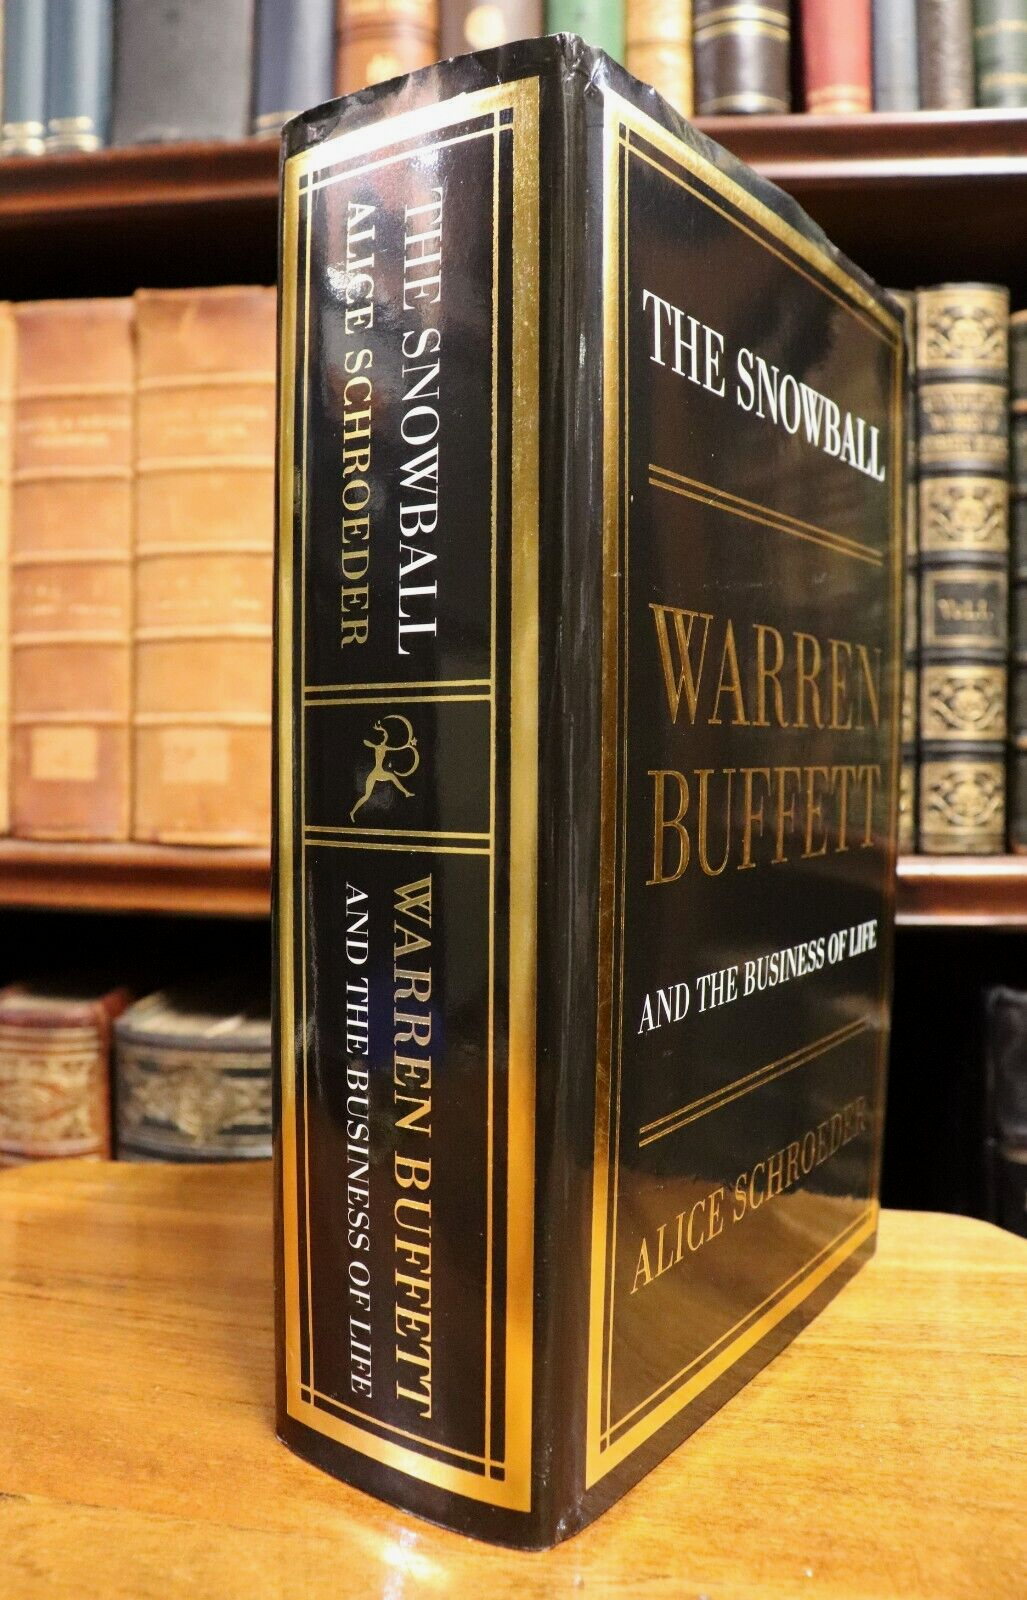 The Snowball: Warren Buffet Business Of Life - 2008 - Financial Book